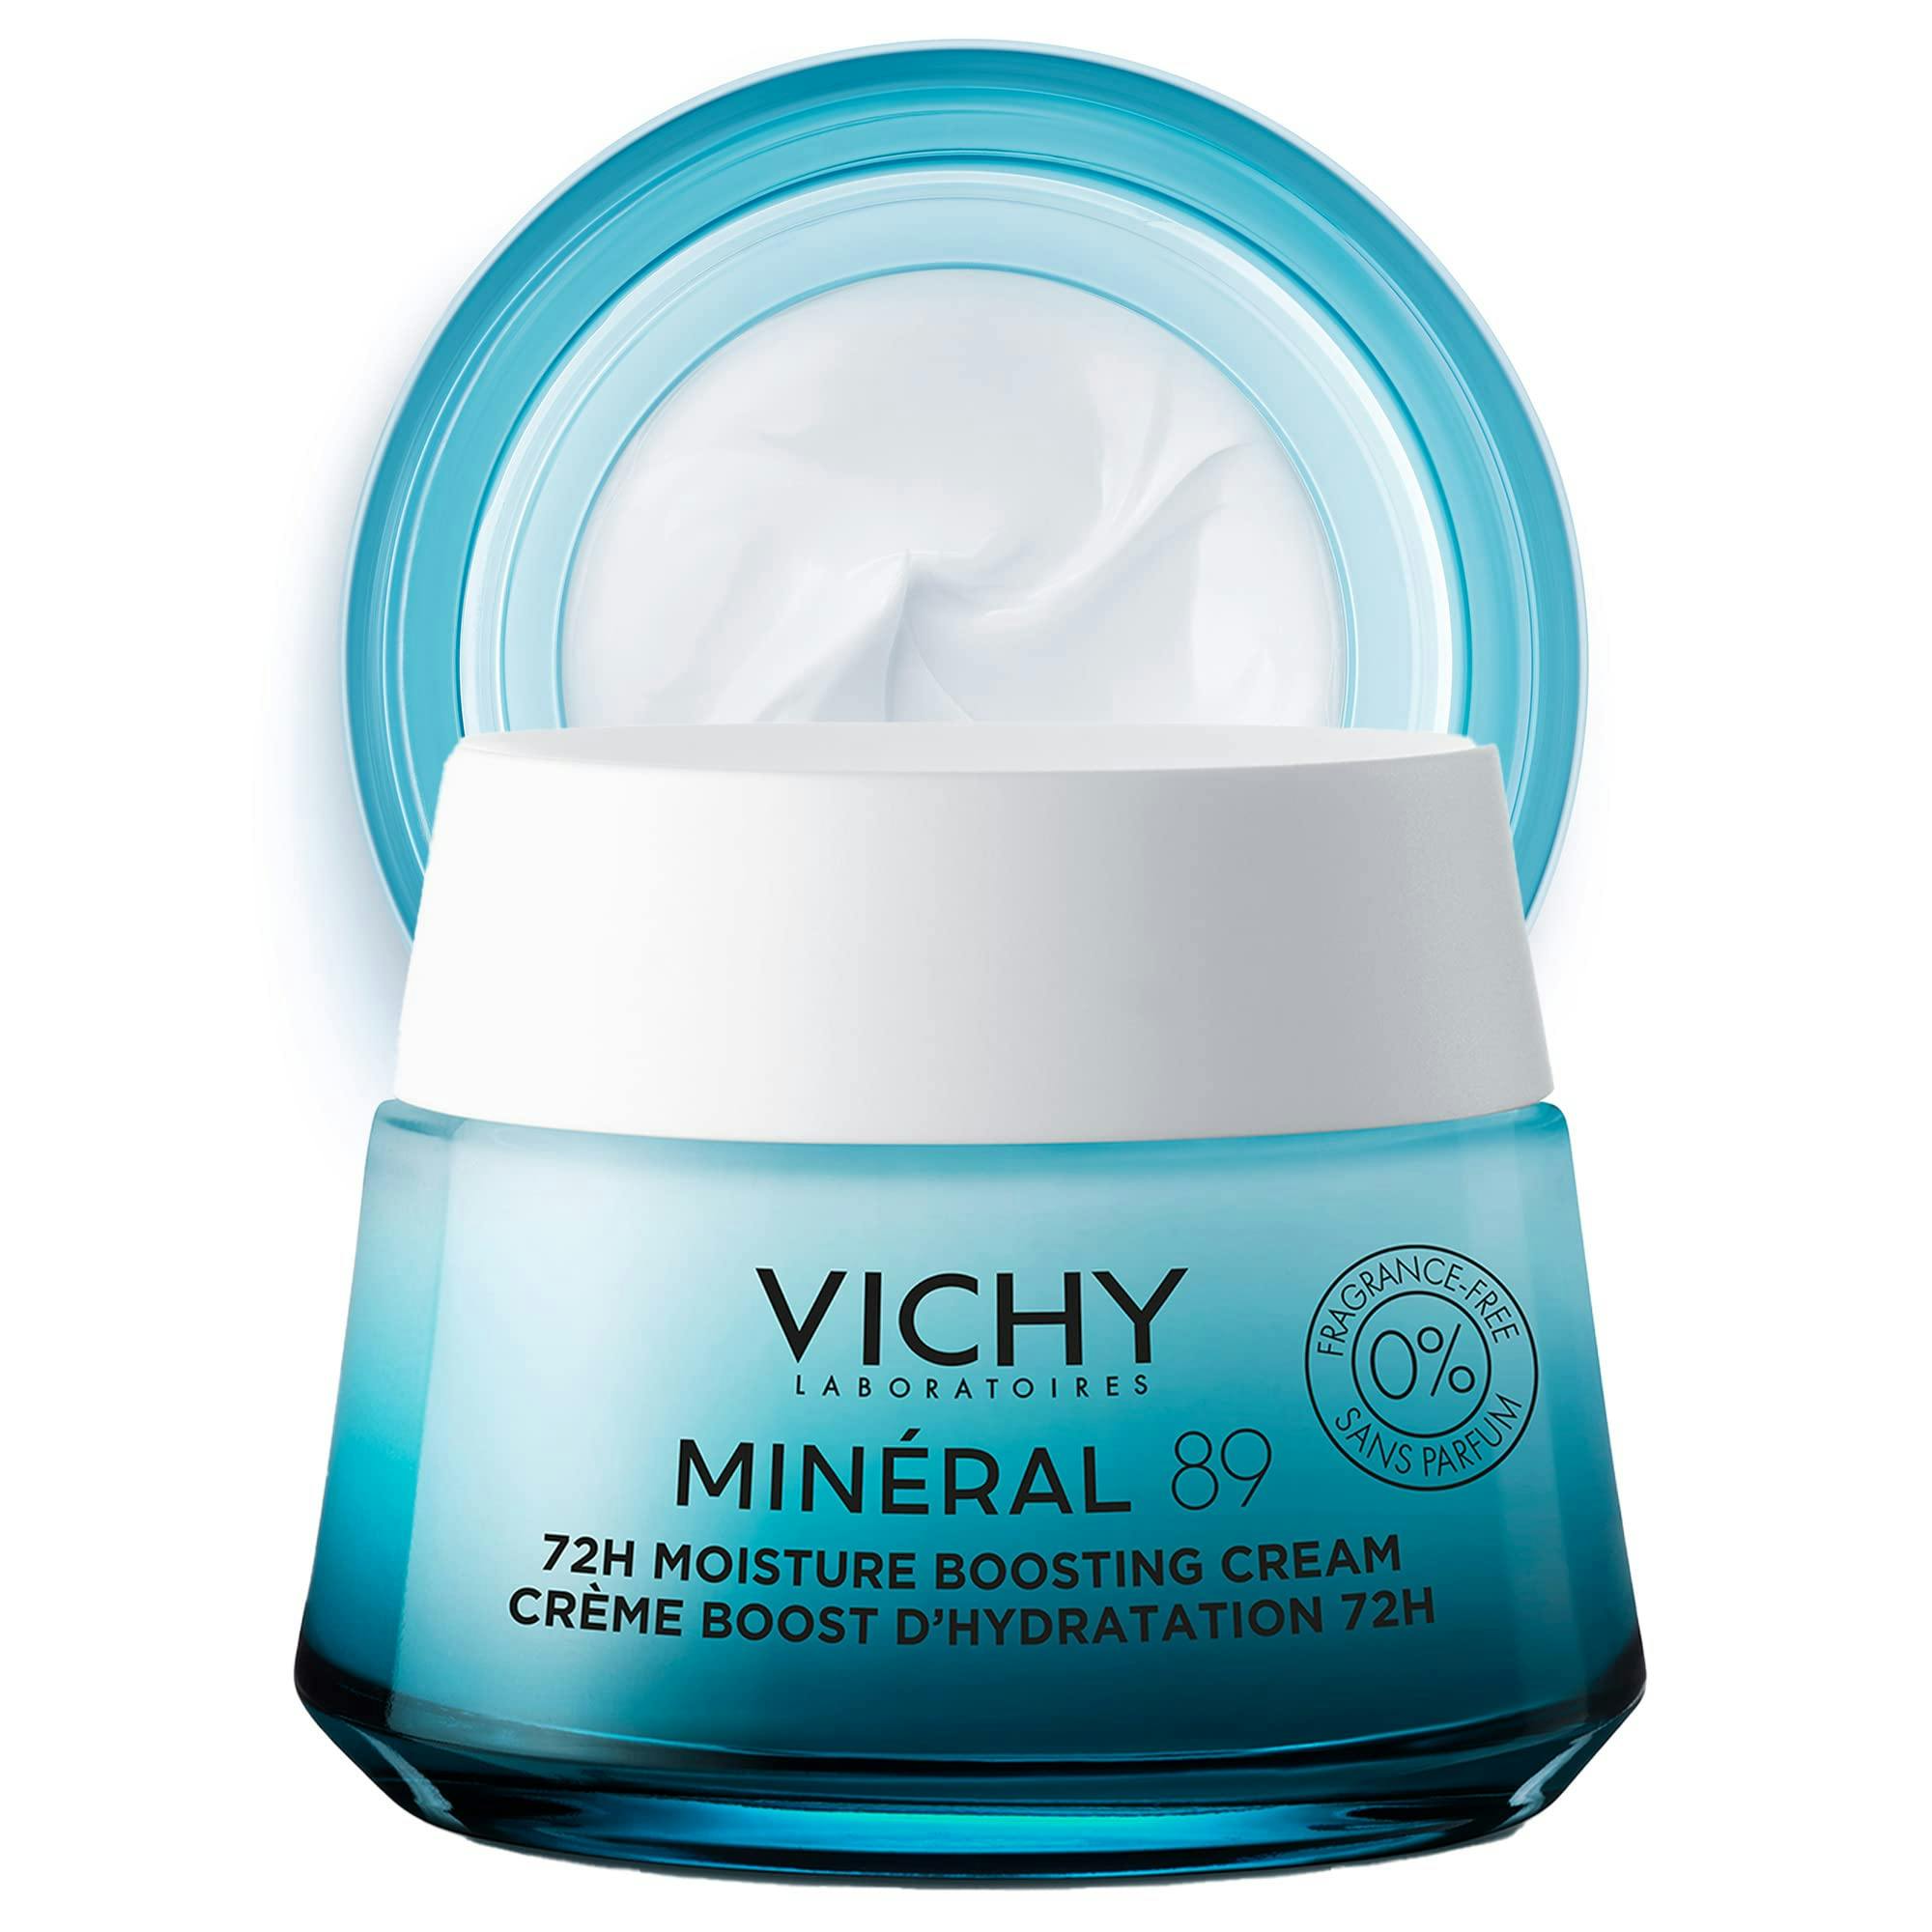 Vichy Mineral 89 Light 72H Moisture Boosting Cream Легкий крем для всіх типів шкіри обличчя, зволоження 72 години